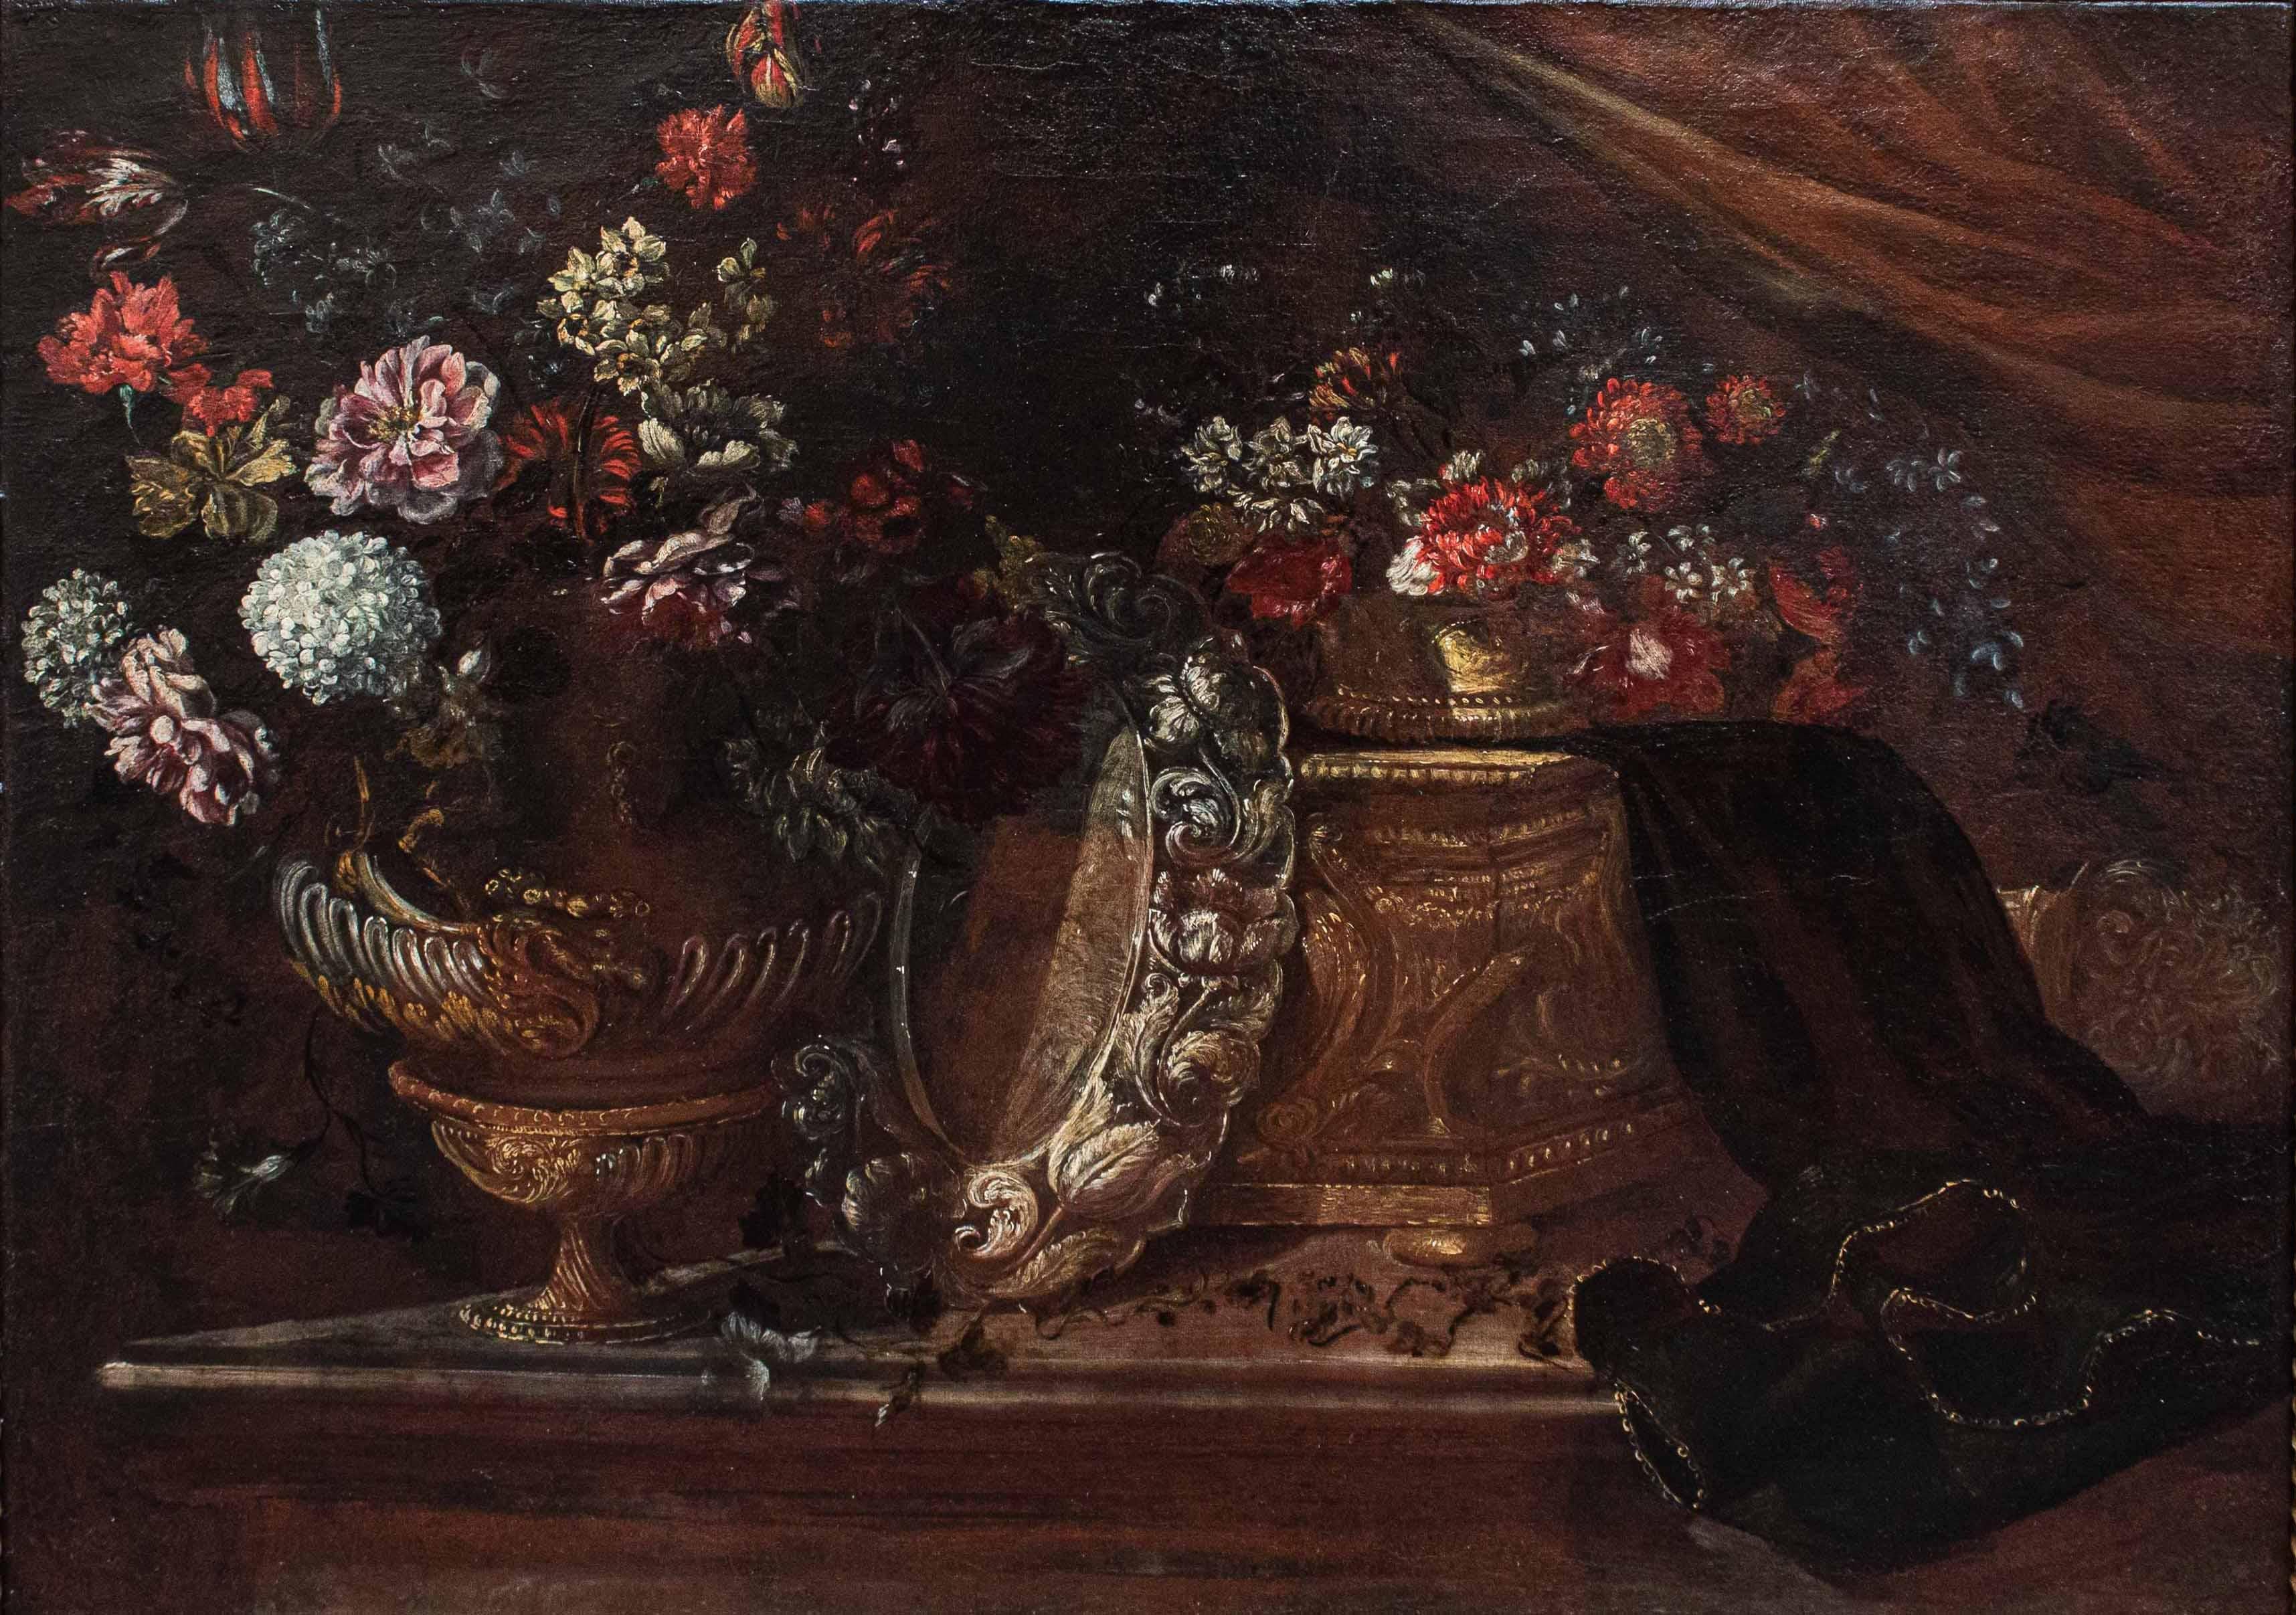 École romaine, 17e siècle

Nature morte

Huile sur toile, 79 x 107 cm 

Encadré, 93 x 121 cm

L'œuvre examinée, qui représente une majestueuse nature morte de fleurs, est attribuée à l'école romaine du XVIIe siècle, au sein d'une structure